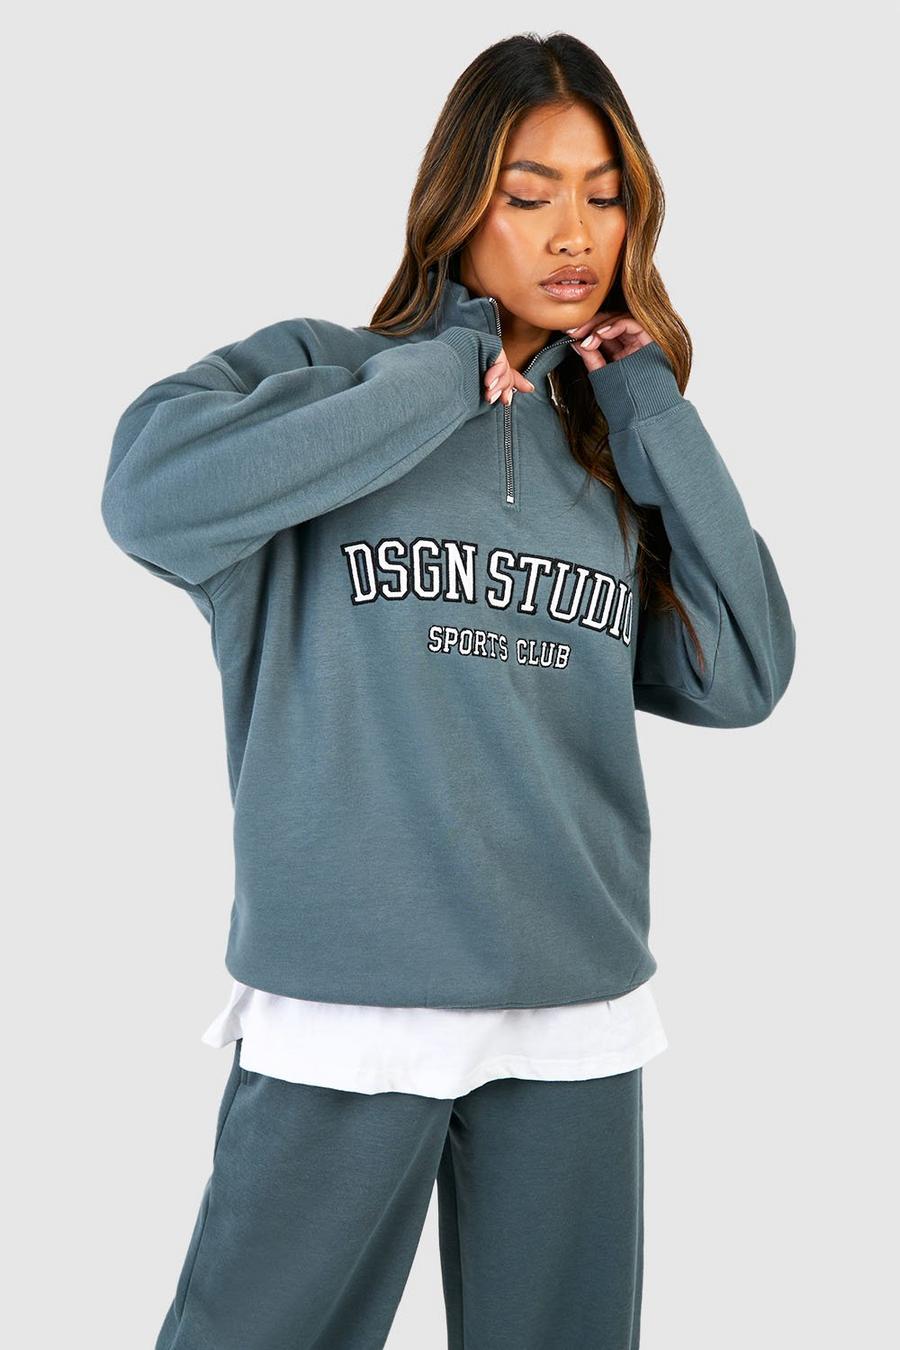 Sage Dsgn Studio Applique Oversized Half Zip Sweatshirt image number 1